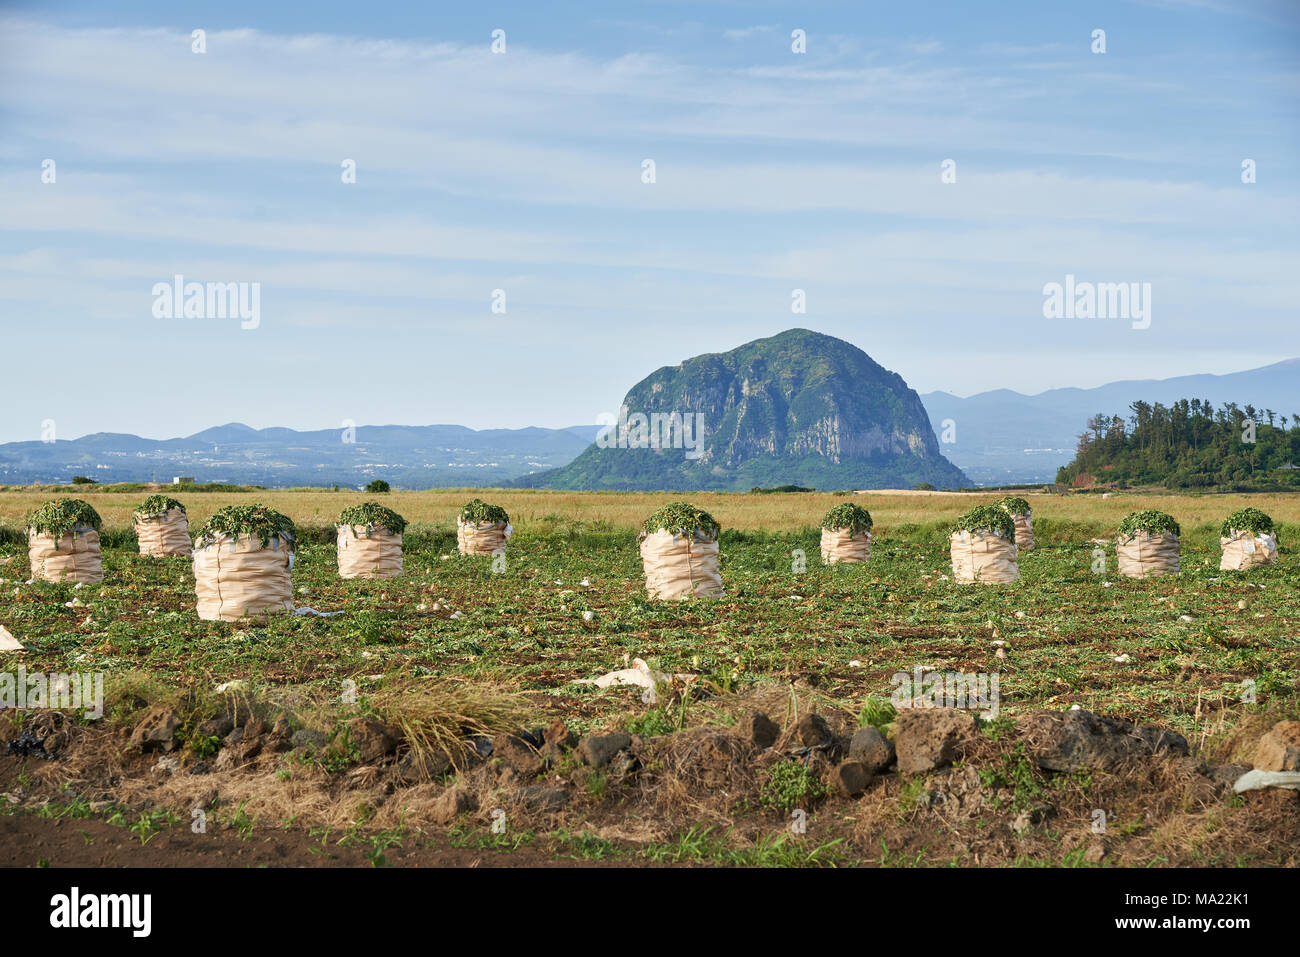 Landschaft von daikon Bauernhof Feld mit Mt. Sanbangsan und Mt. Hallasan in Daejeong - eup, Jeju Island, Korea. Stockfoto